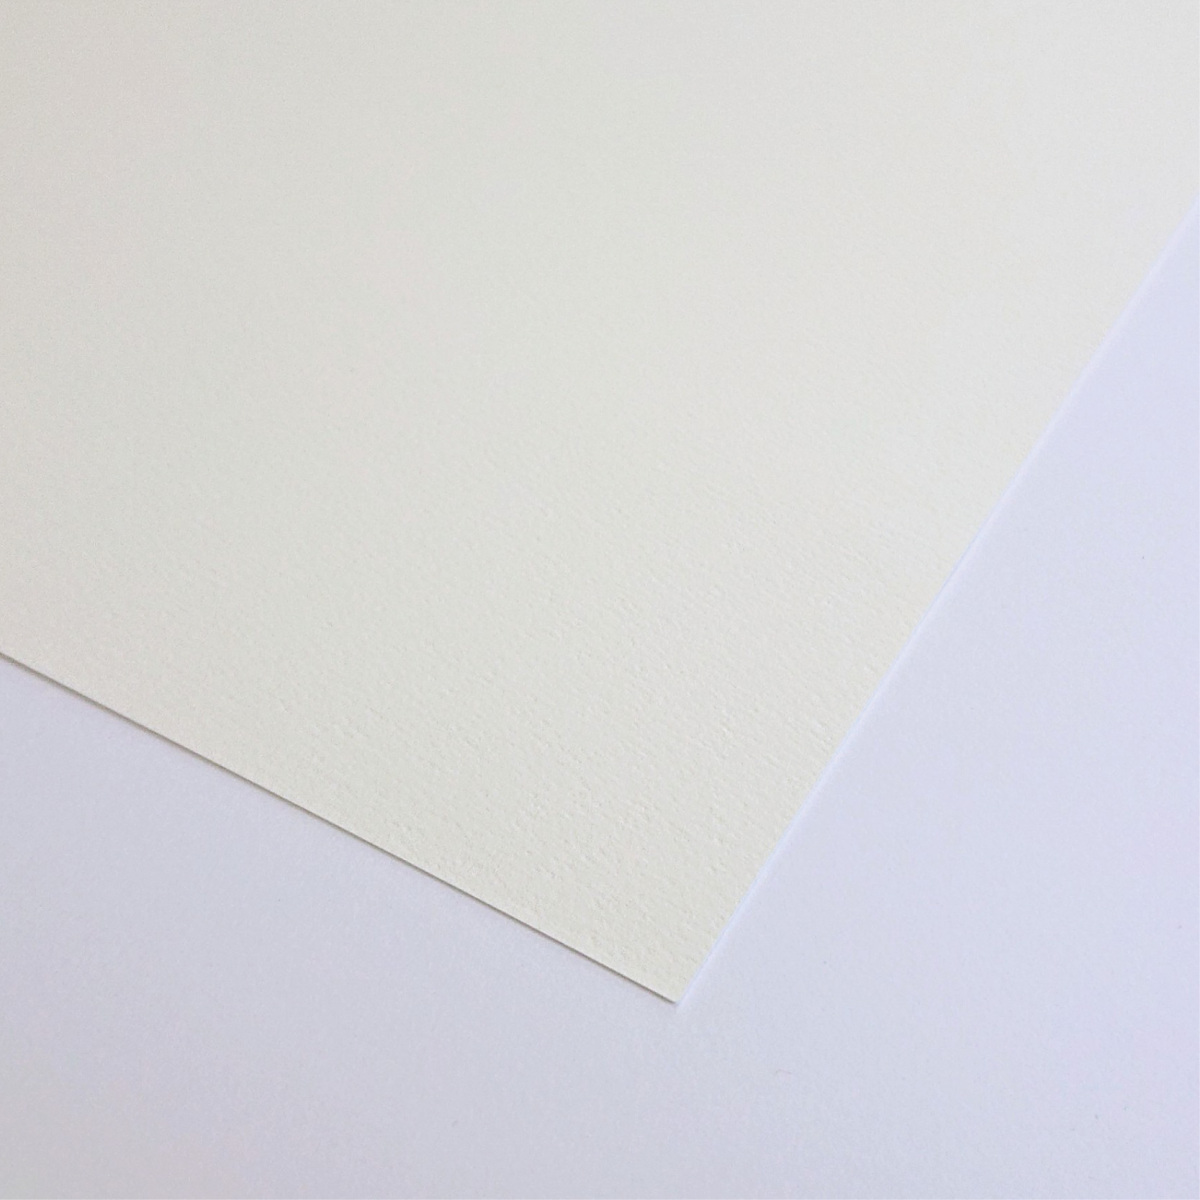  бумага для рисования акварель бумага Sirius акварель бумага Special толщина .(220g) 50 листов входит B5 размер Orion 